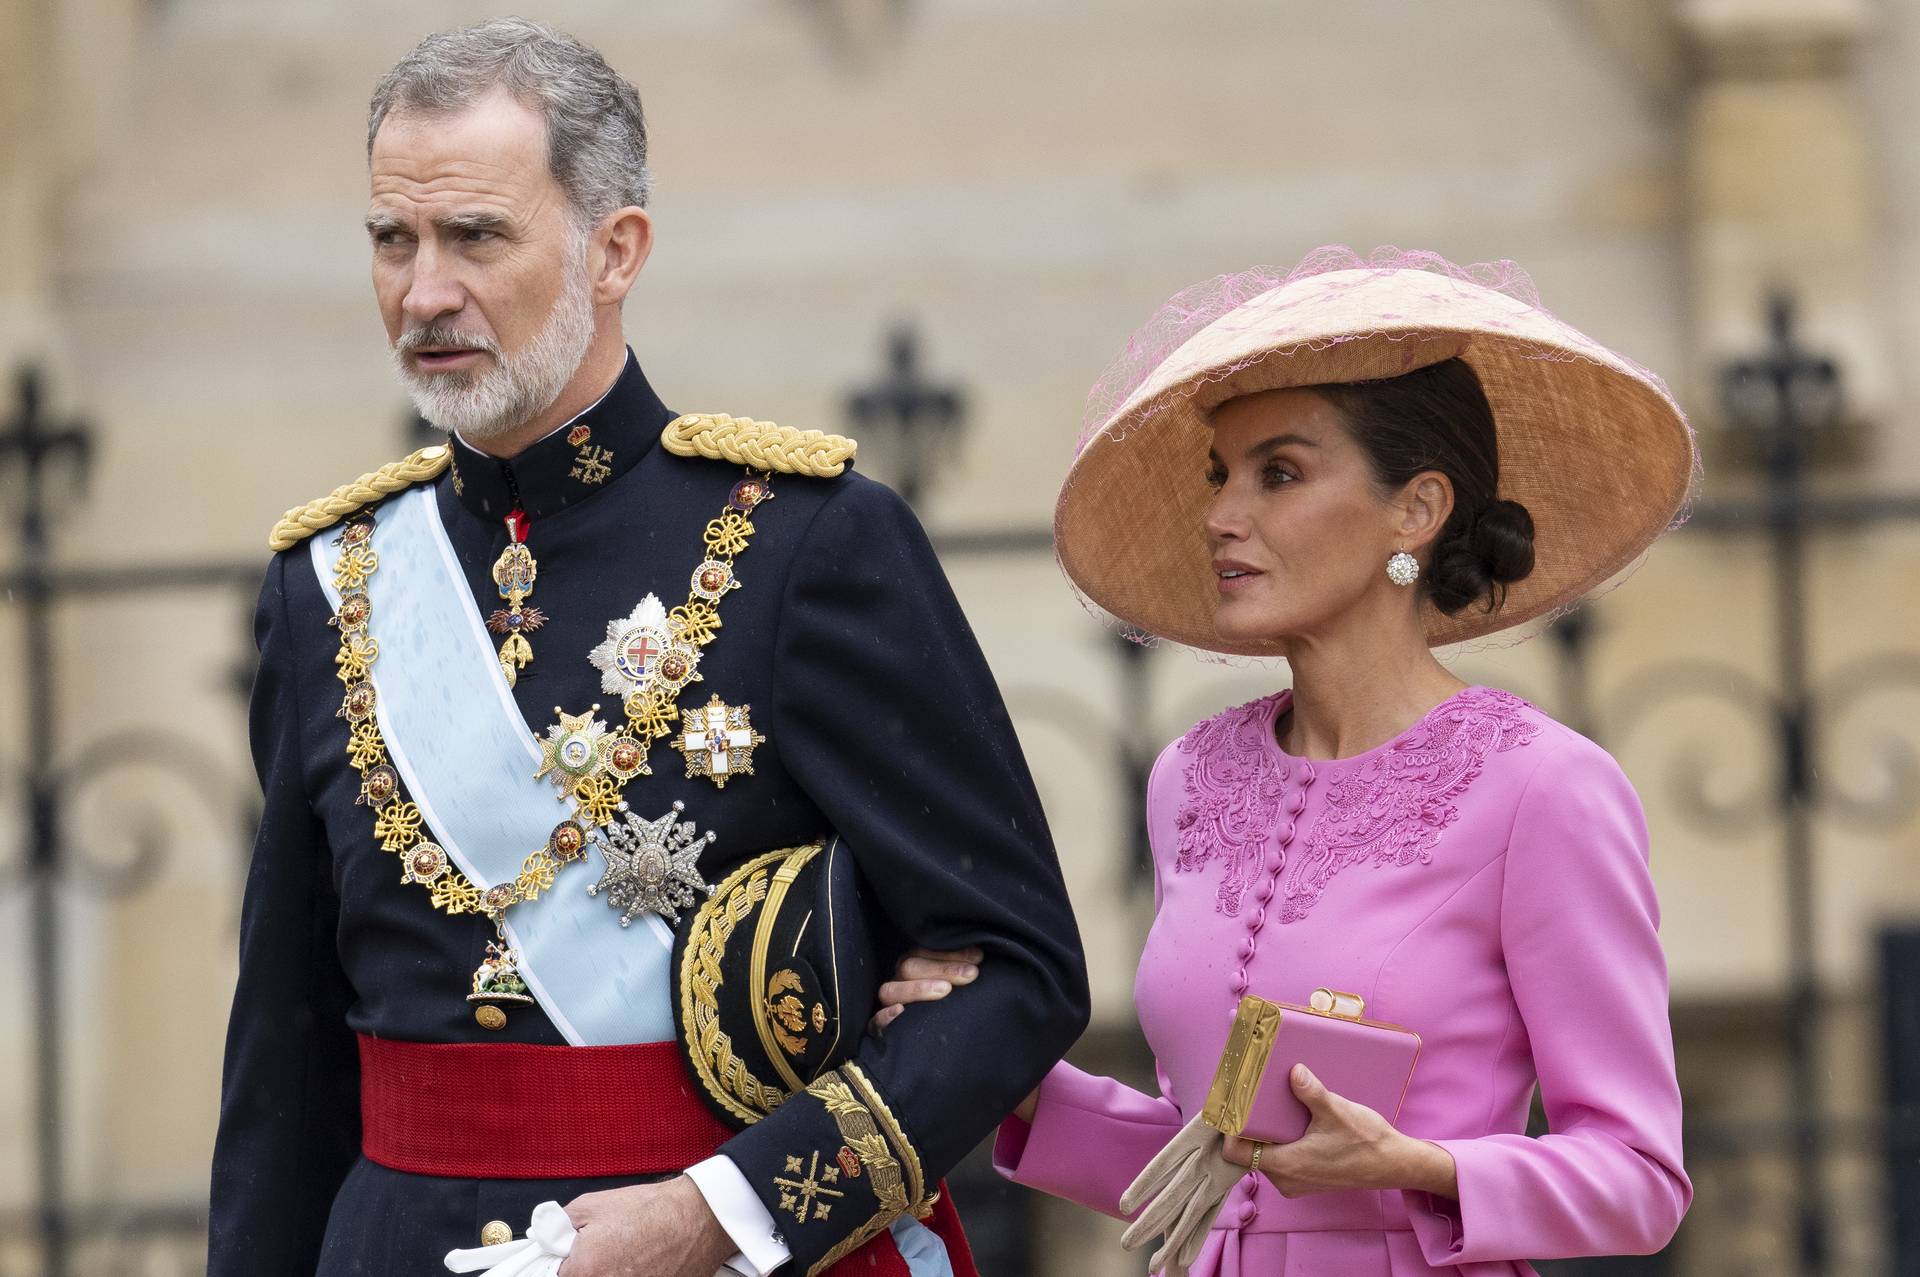 Letícia spanyol királyné megcsalási botránya